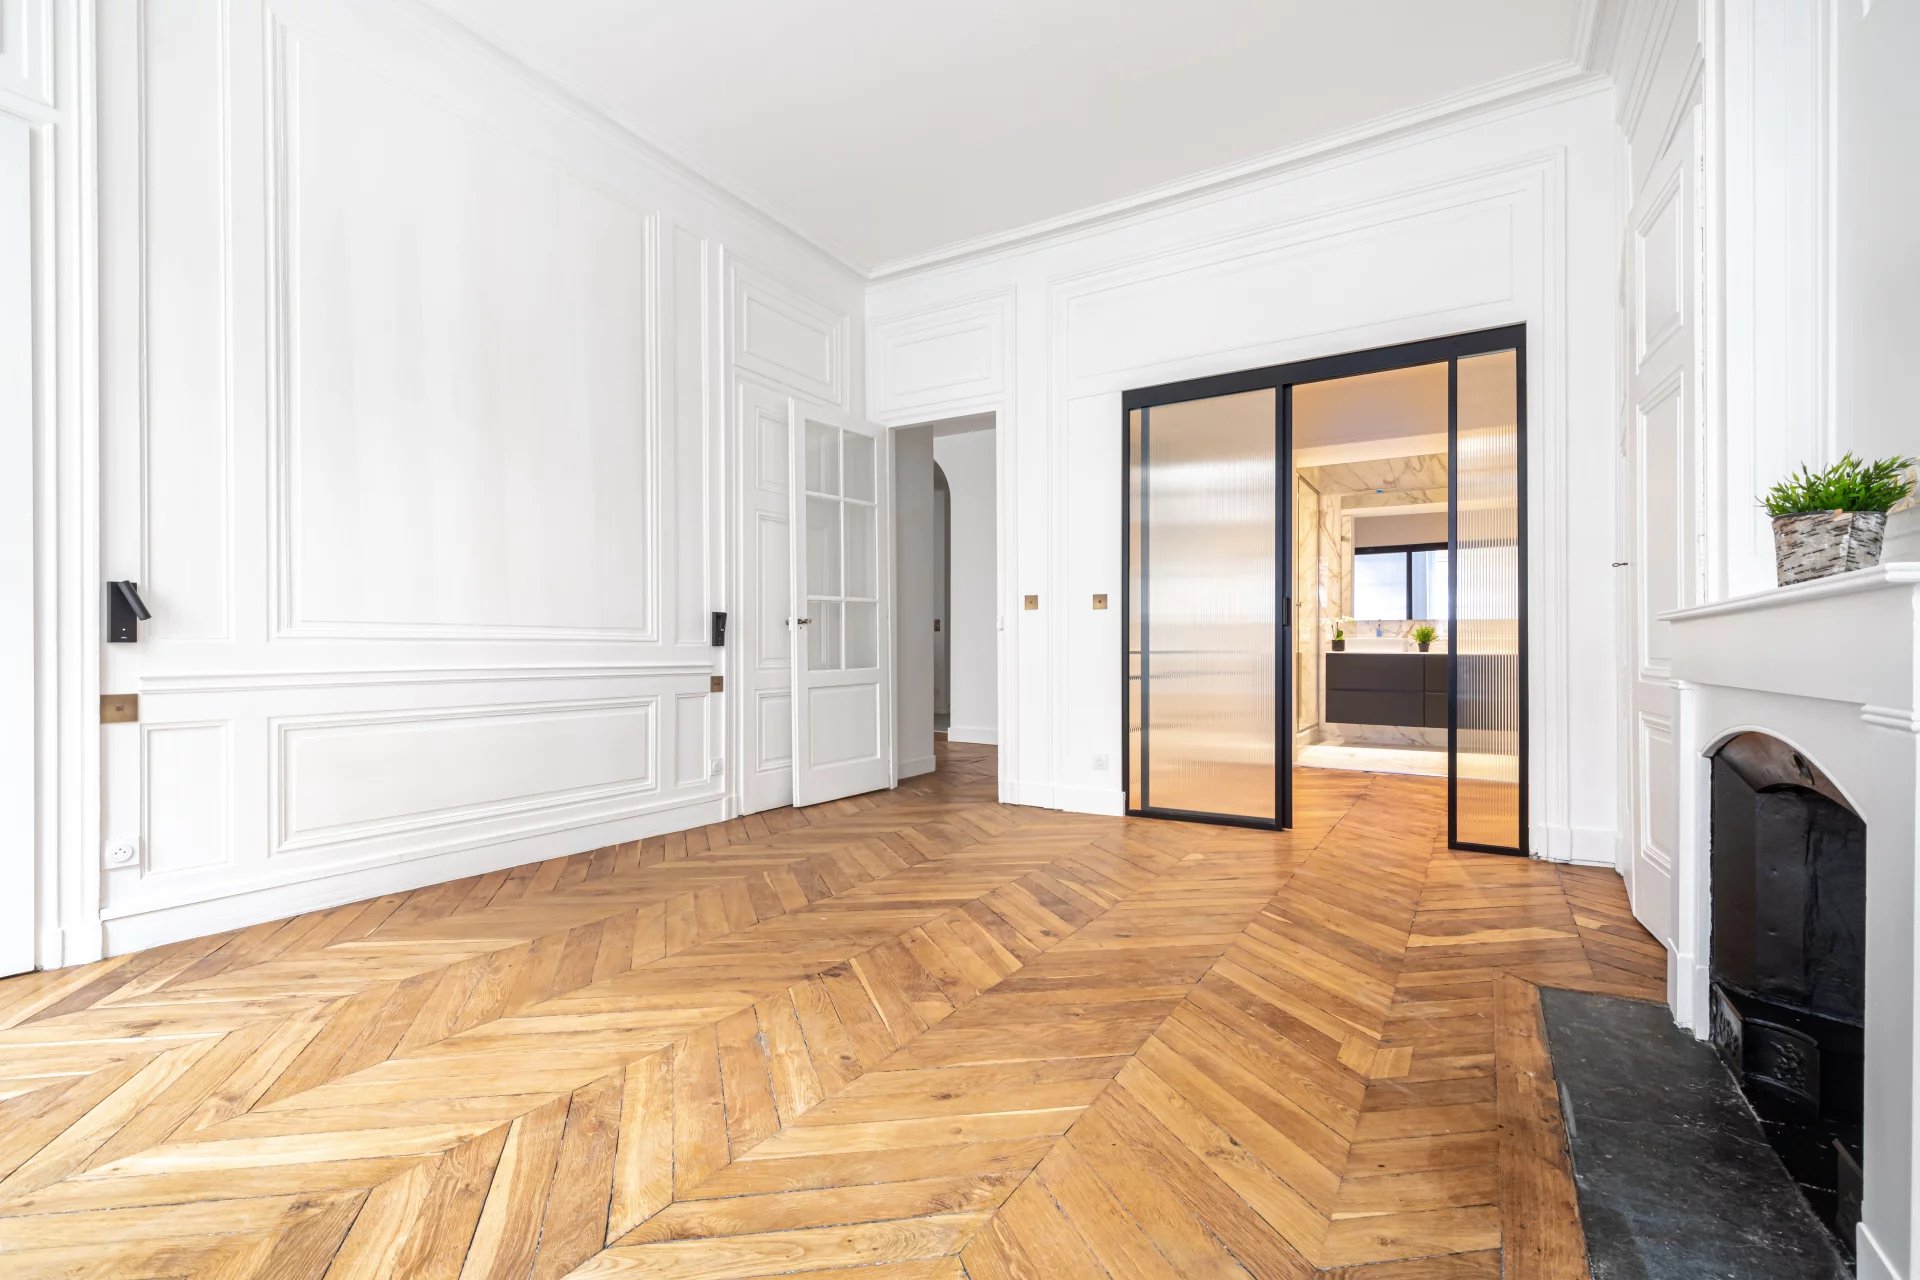 Sale Apartment - Lyon 6ème